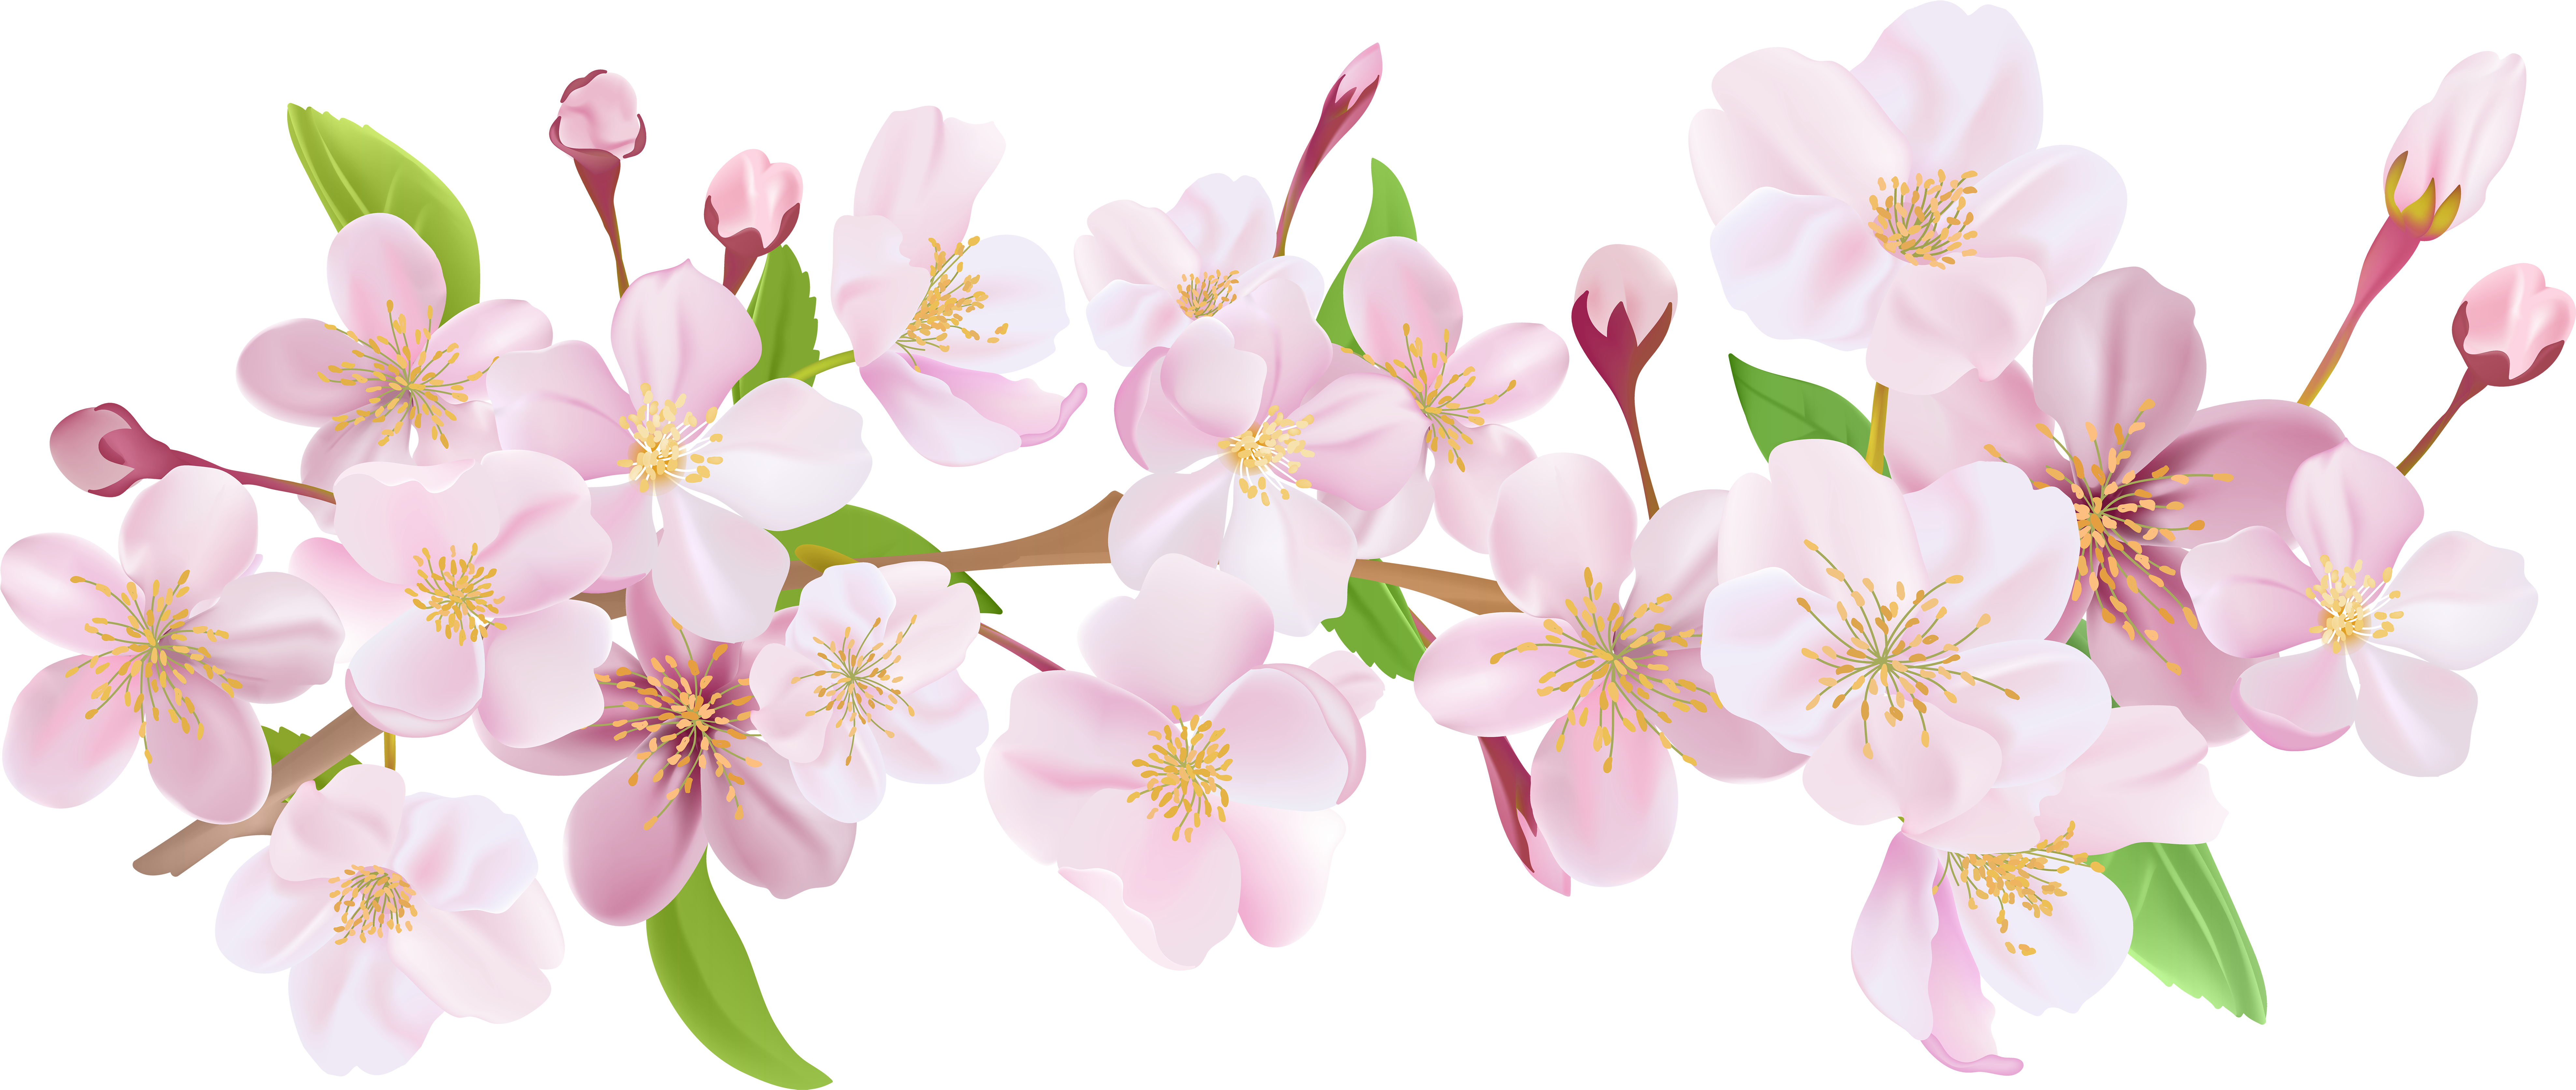 Cherry Blossom Petals Falling Png Cherry Blossom Flow - vrogue.co